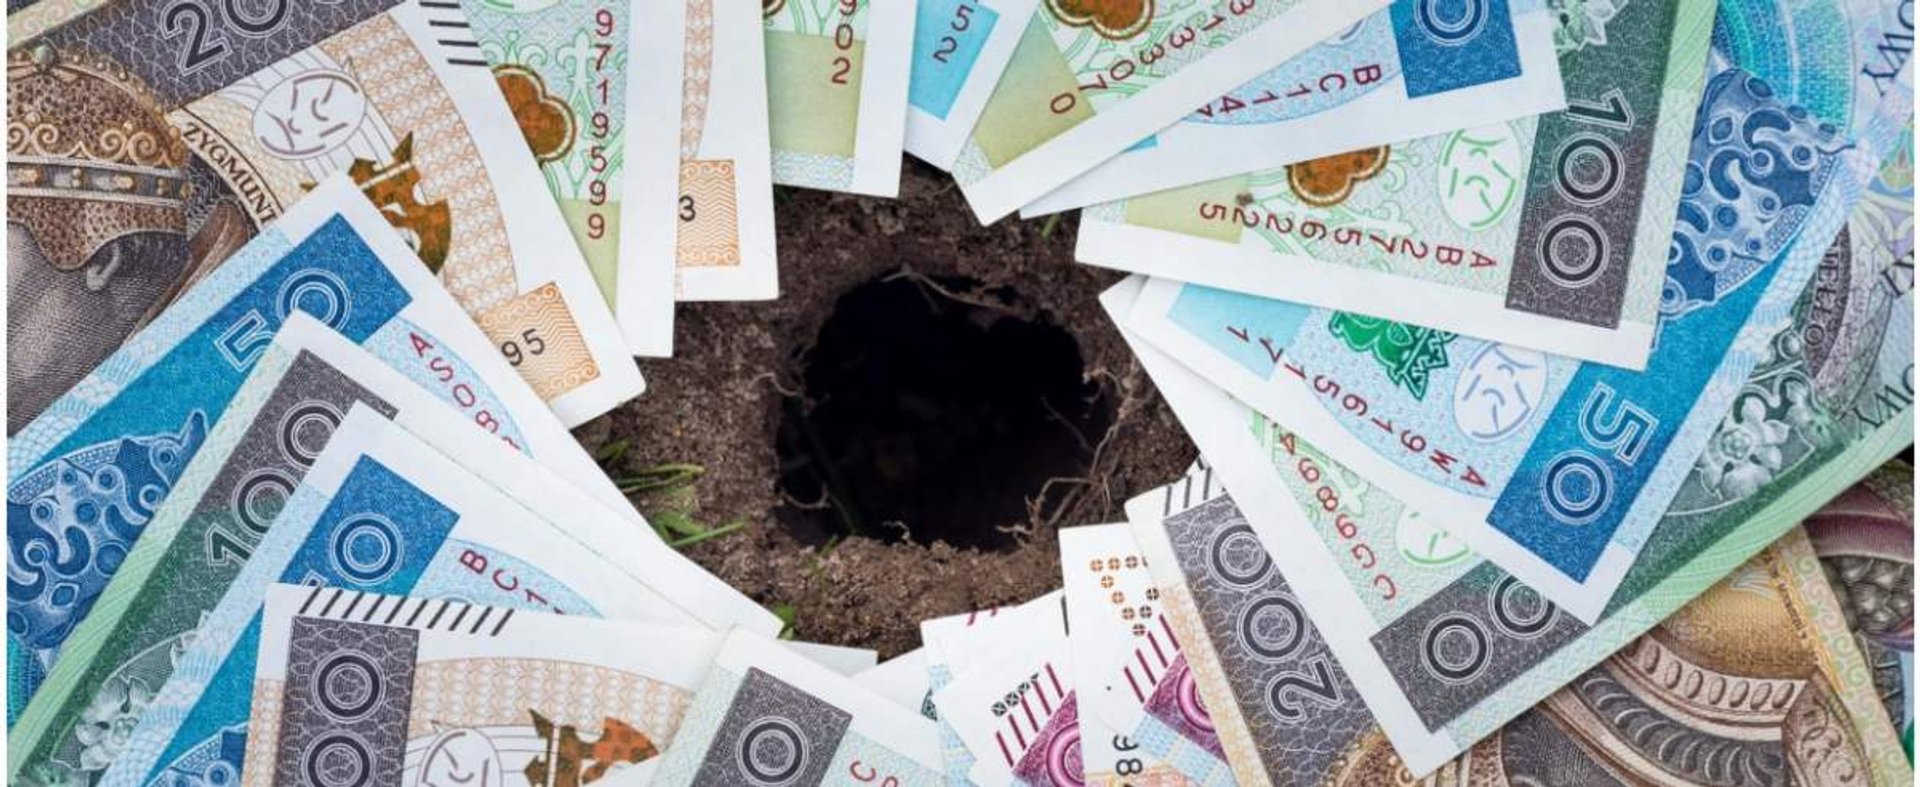 fot: Arkadiusz Ziolek/ East News. 17.06.2020. n/z Polskie banknoty z dziura po srodku - dziura budzetowa.